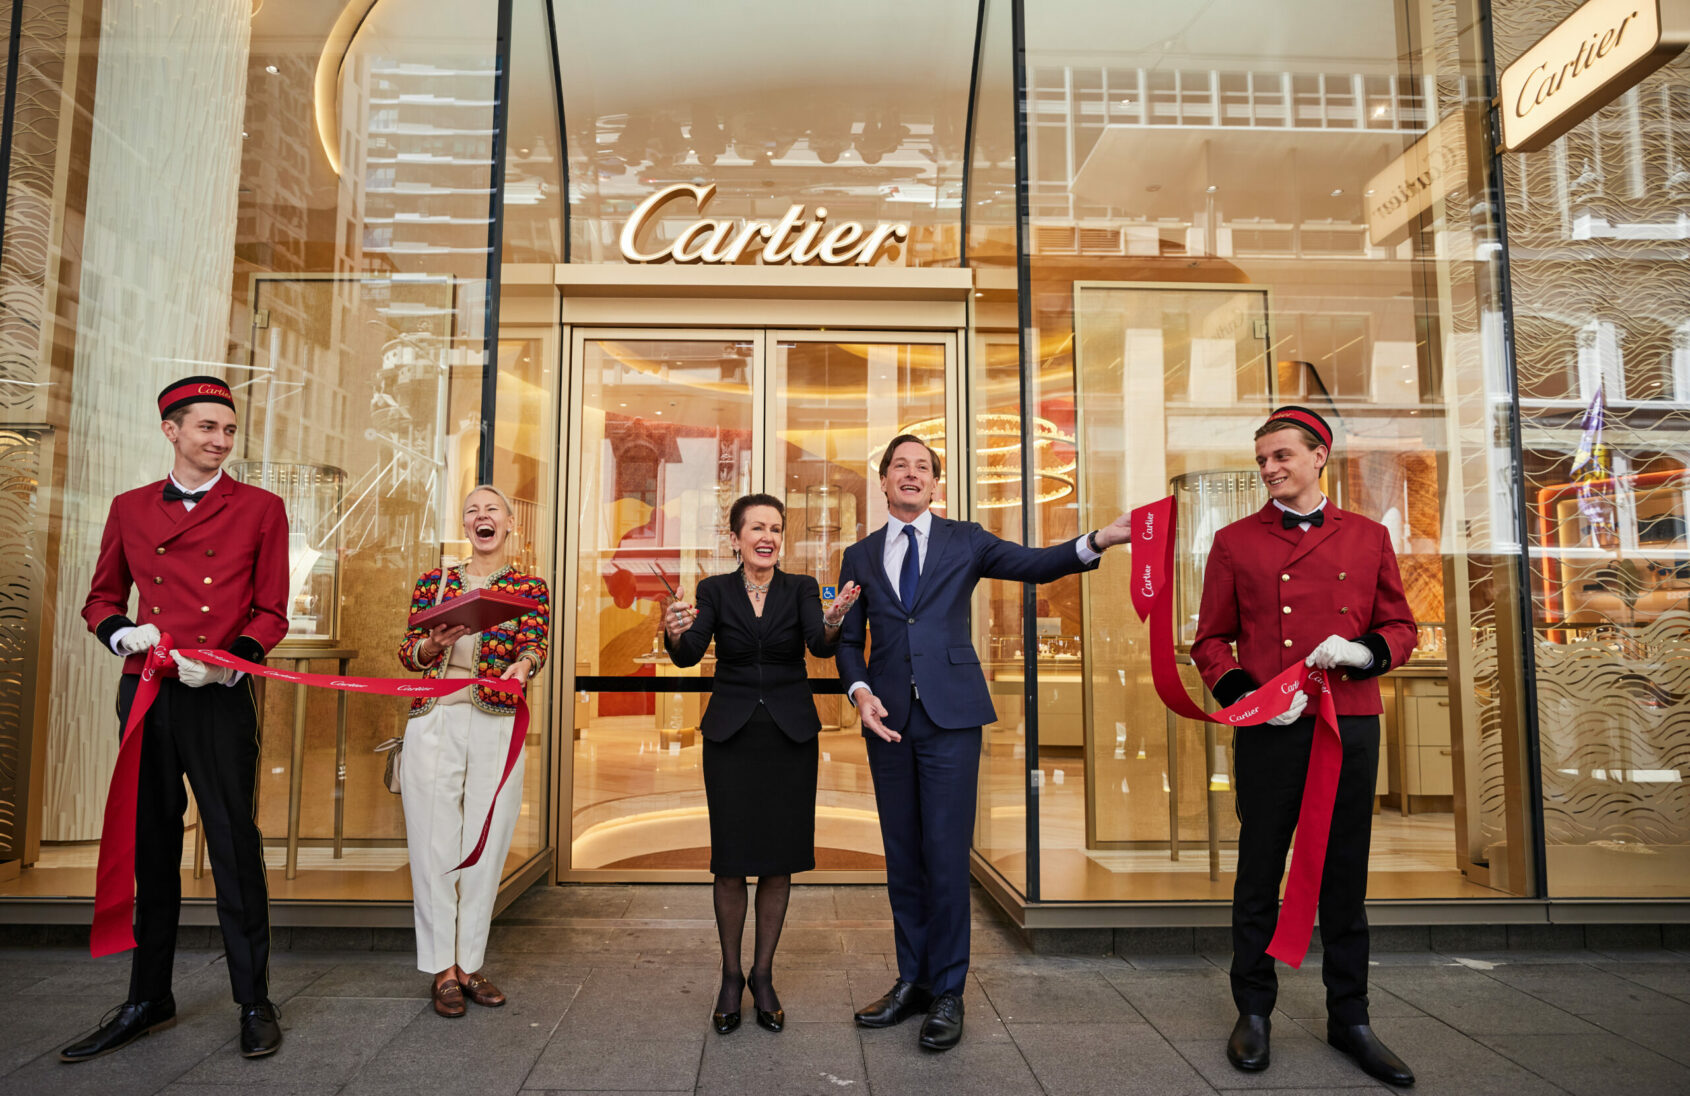 Cartier Sydney